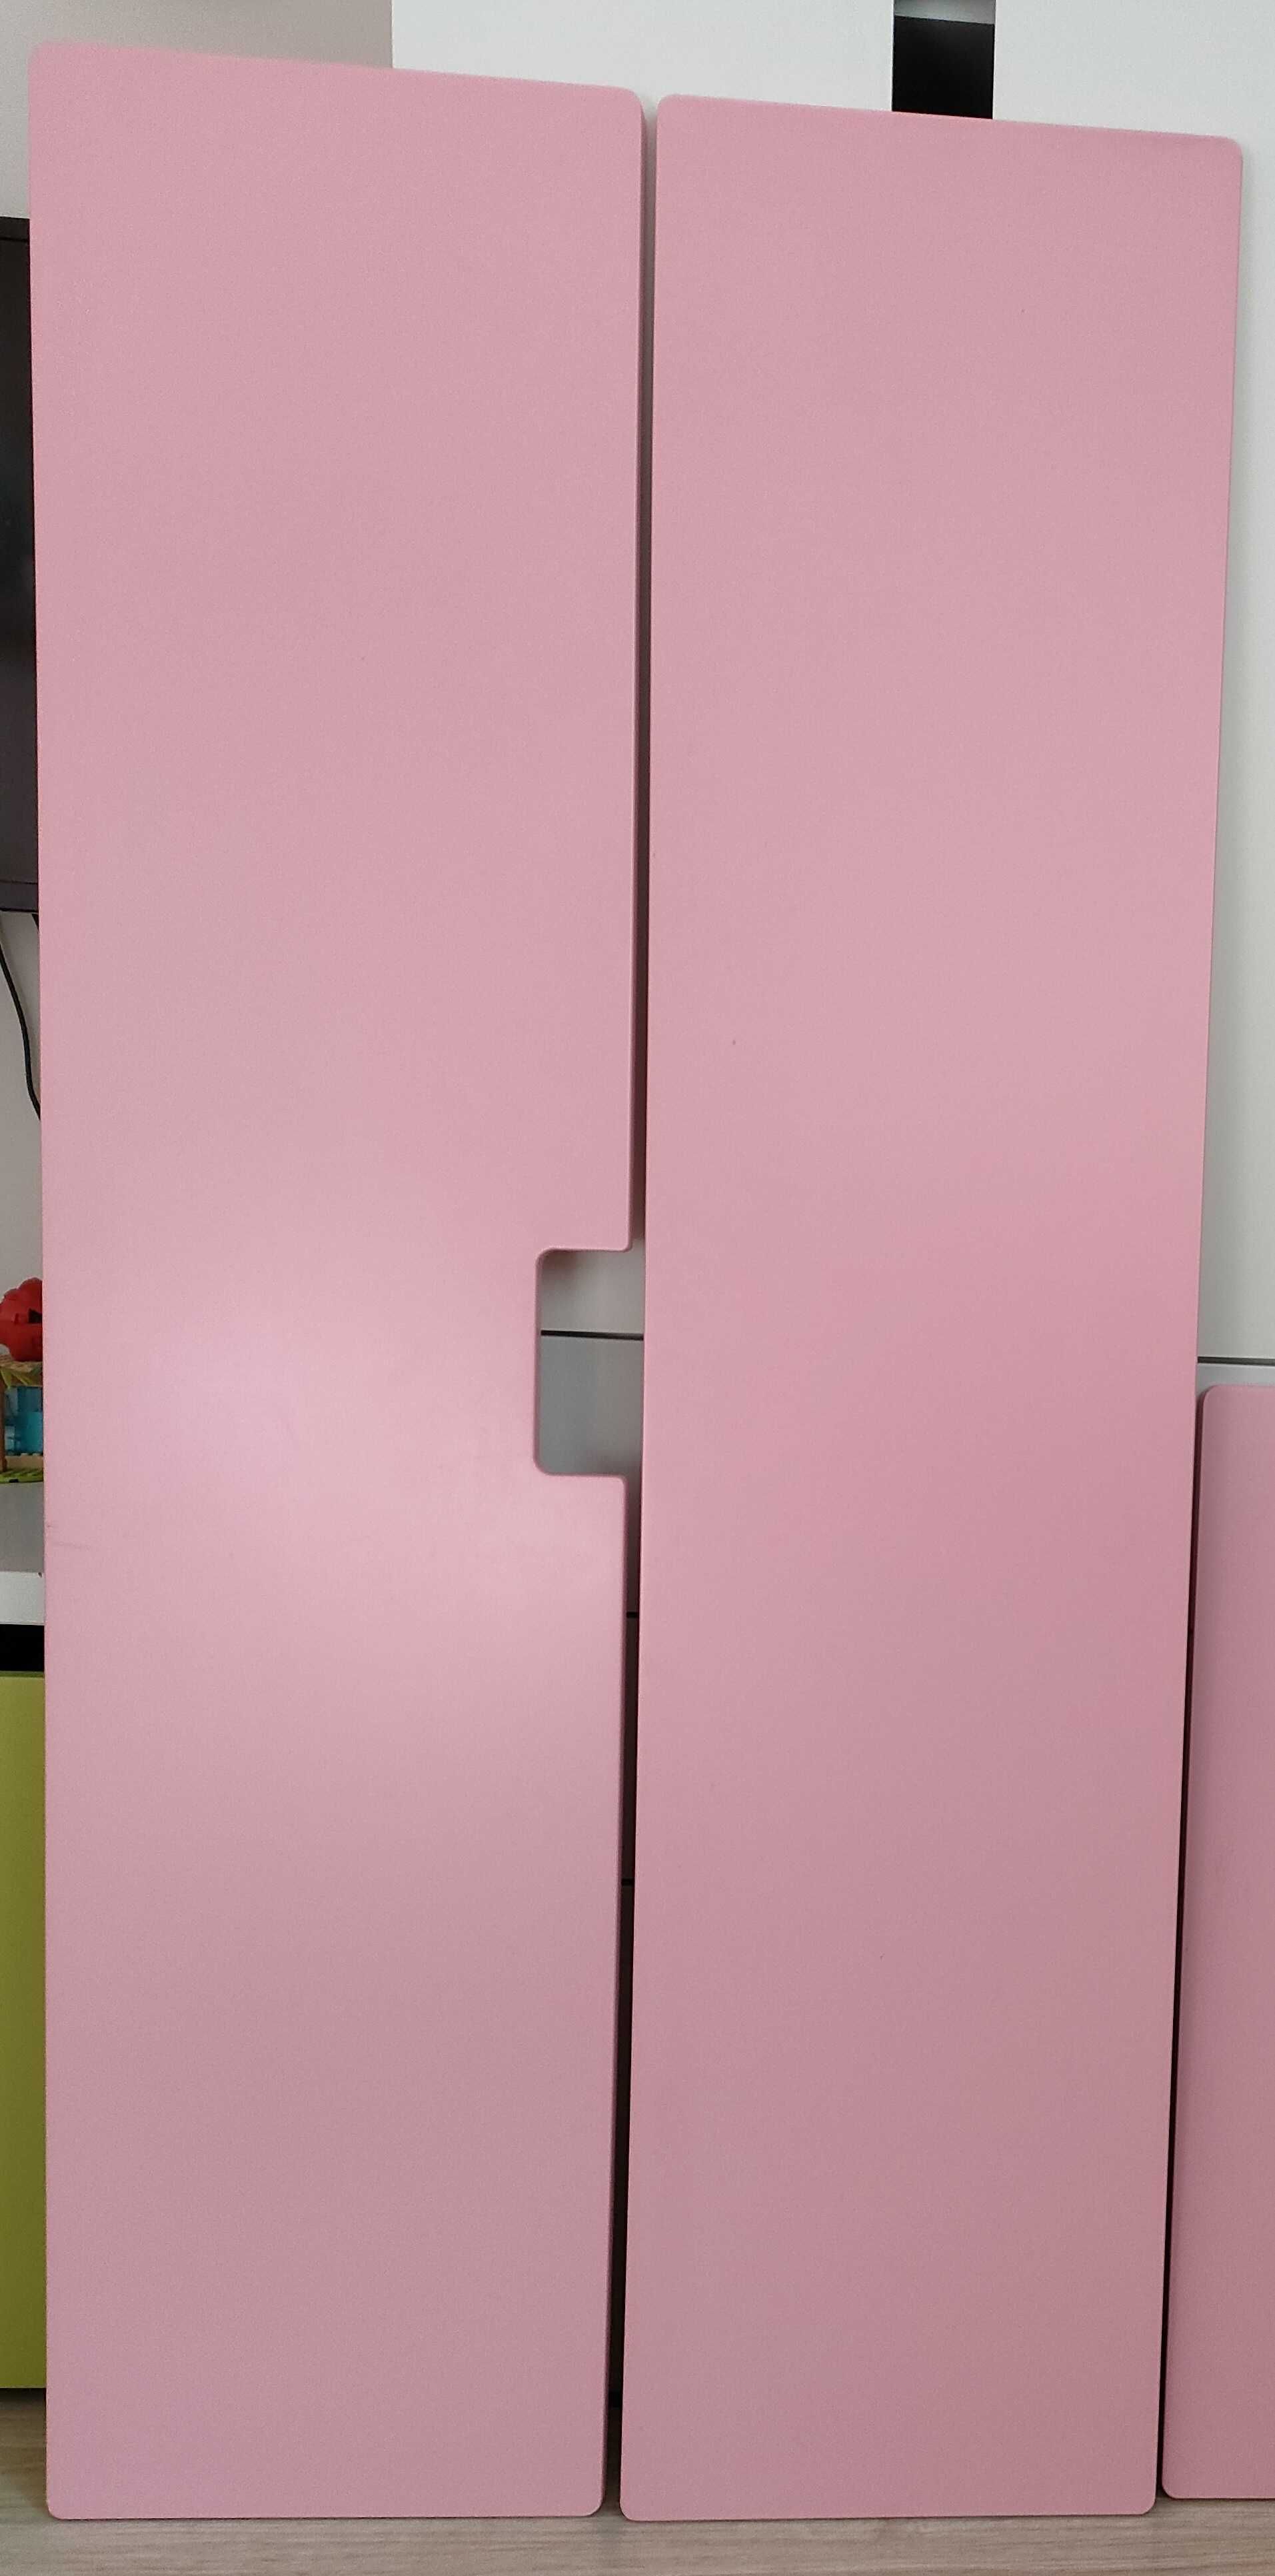 Fronty w kolorze różowym do mebli IKEA Stuva Malad lub innych